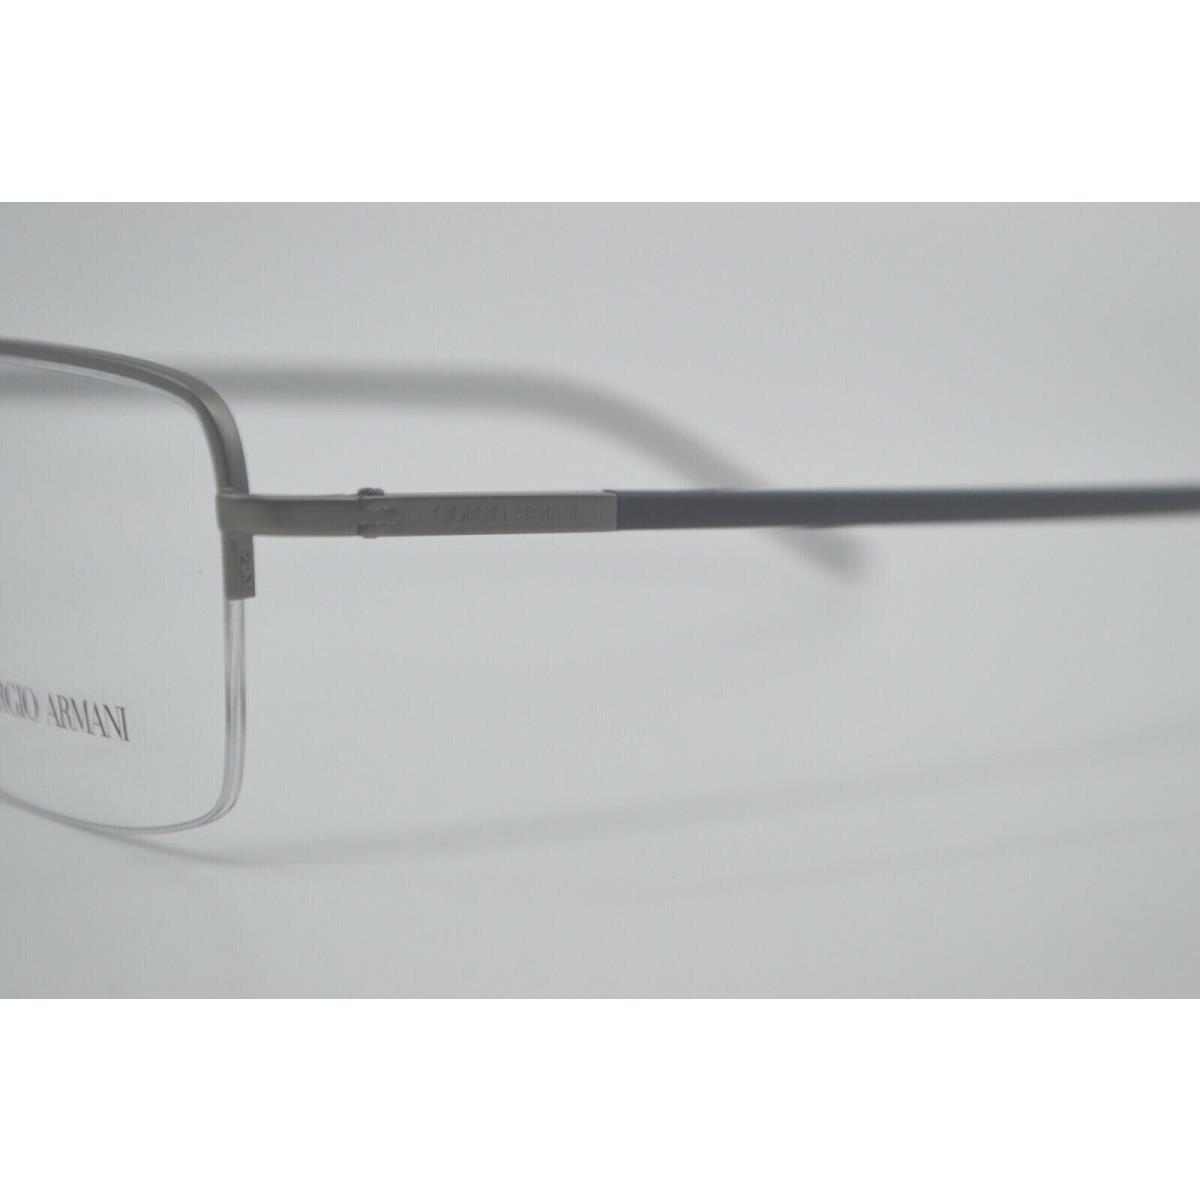 Giorgio Armani eyeglasses  - Gun Metal Frame 3